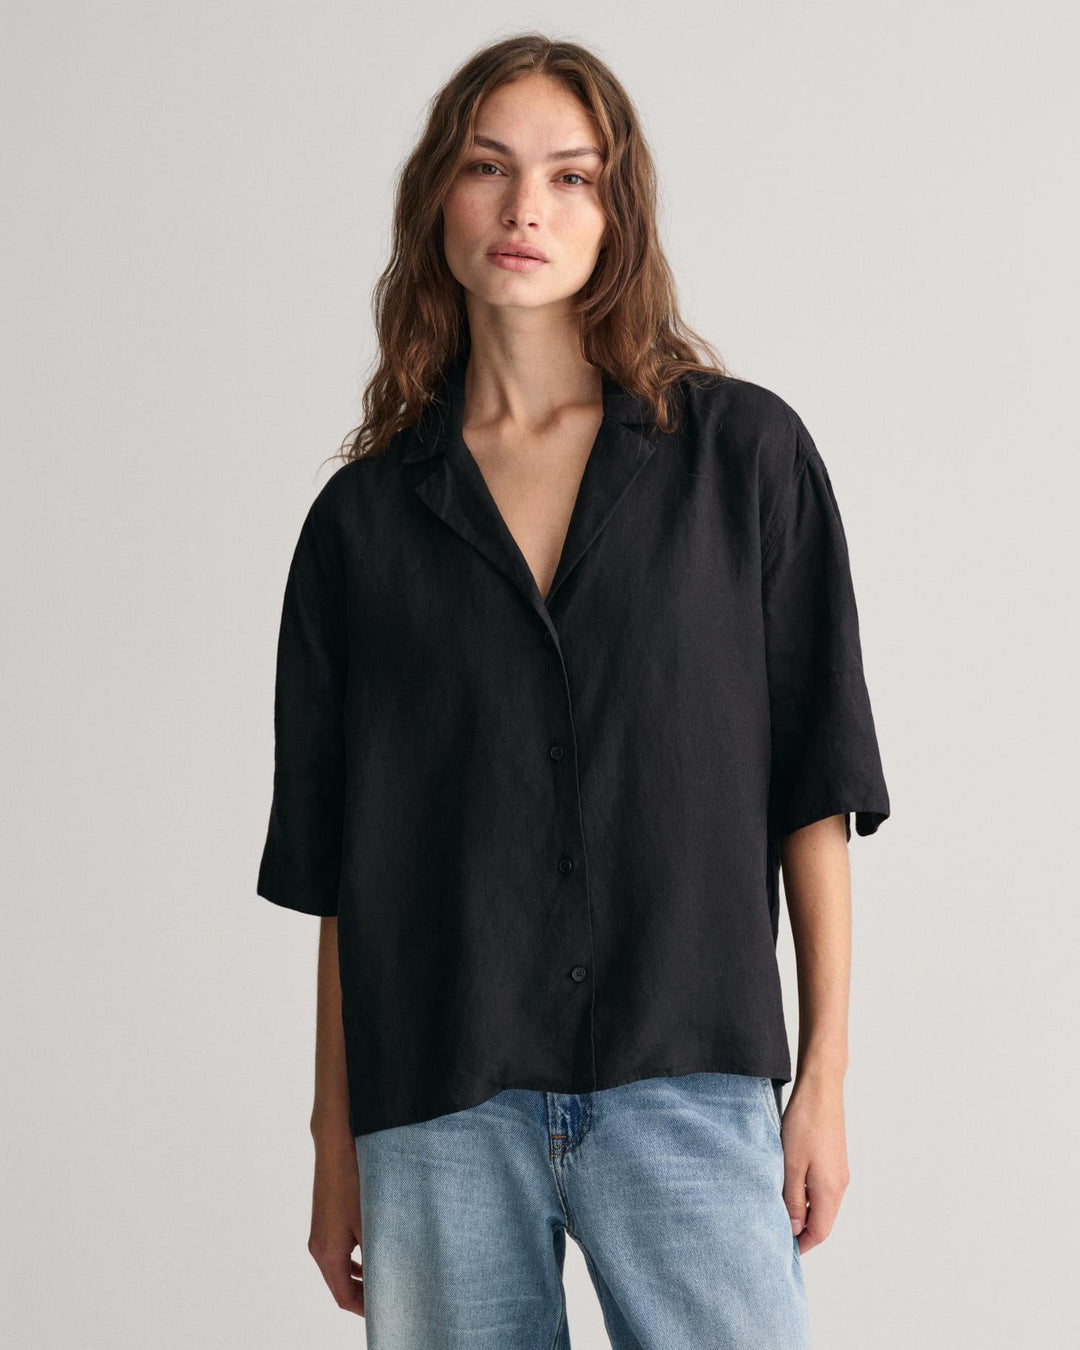 Relaxed Fit Linen Short Sleeve Shirt Ebony Black | Skjorter og bluser | Smuk - Dameklær på nett